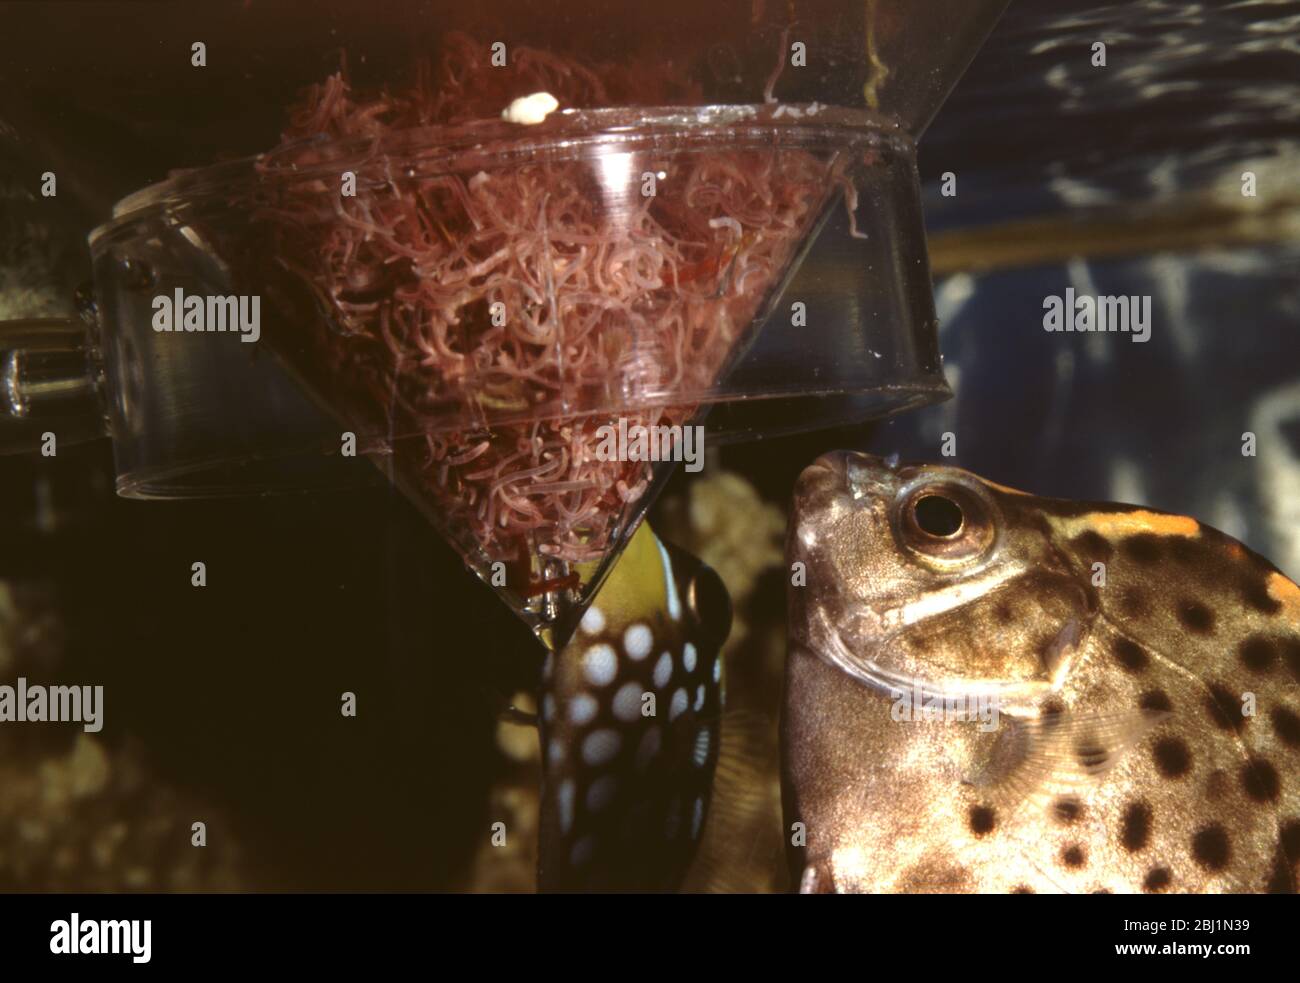 Aquarium live food: tubifex worms Stock Photo